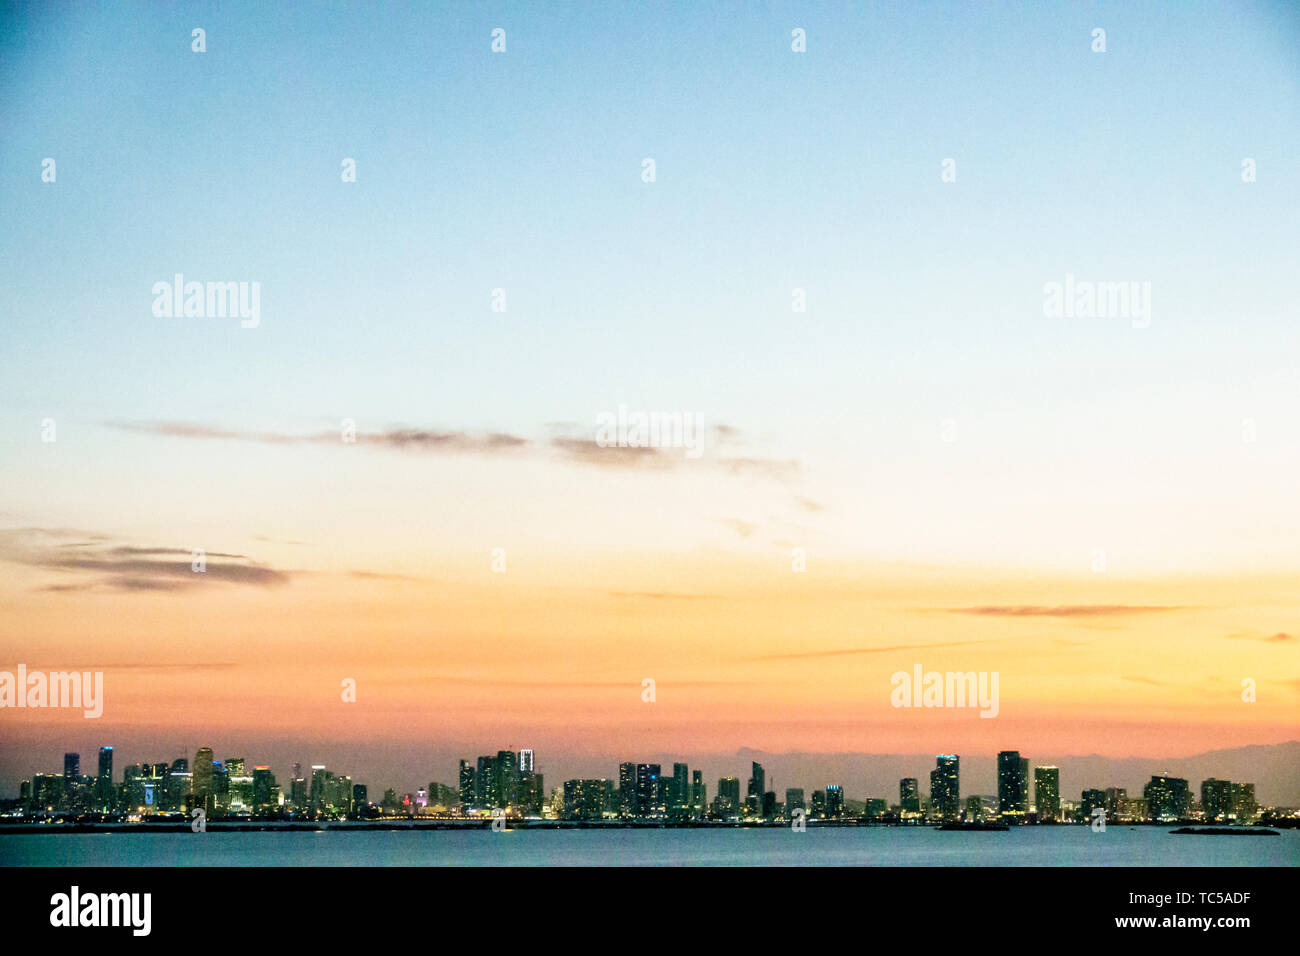 Miami Florida, Biscayne Bay, skyline della città, grattacieli del centro, tramonto cielo, FL190228001 Foto Stock